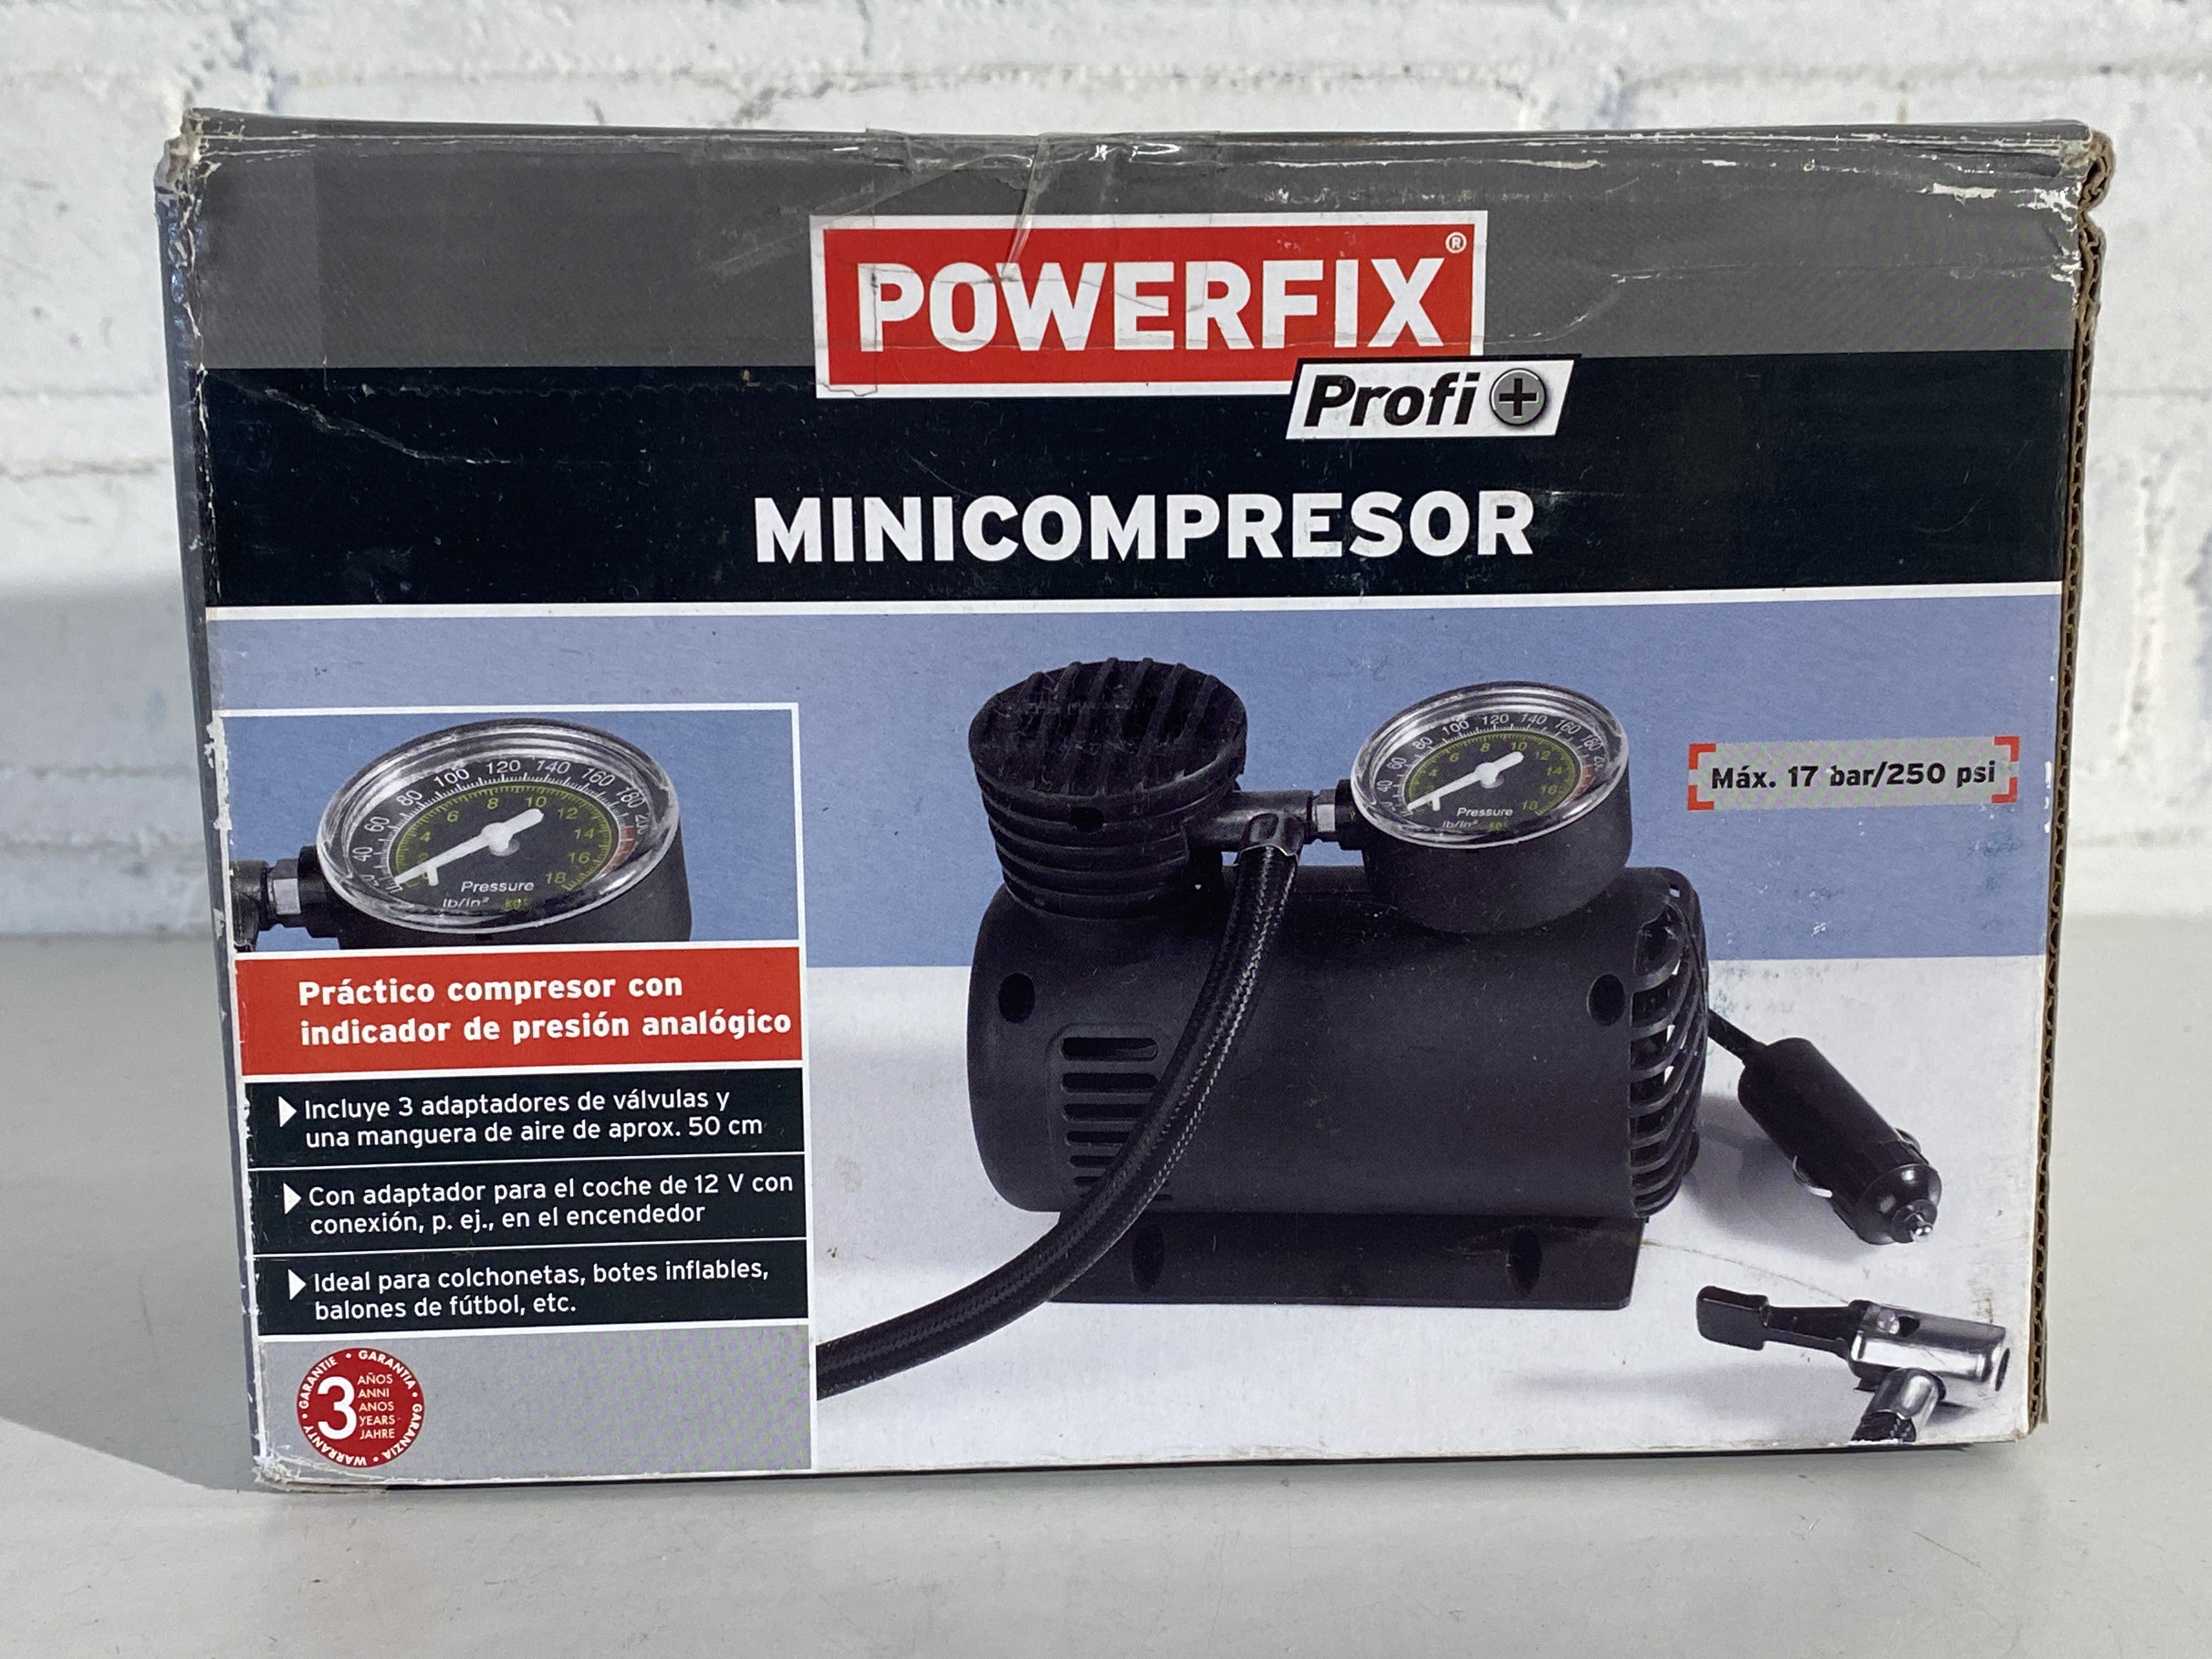 Powerfix minicompressor